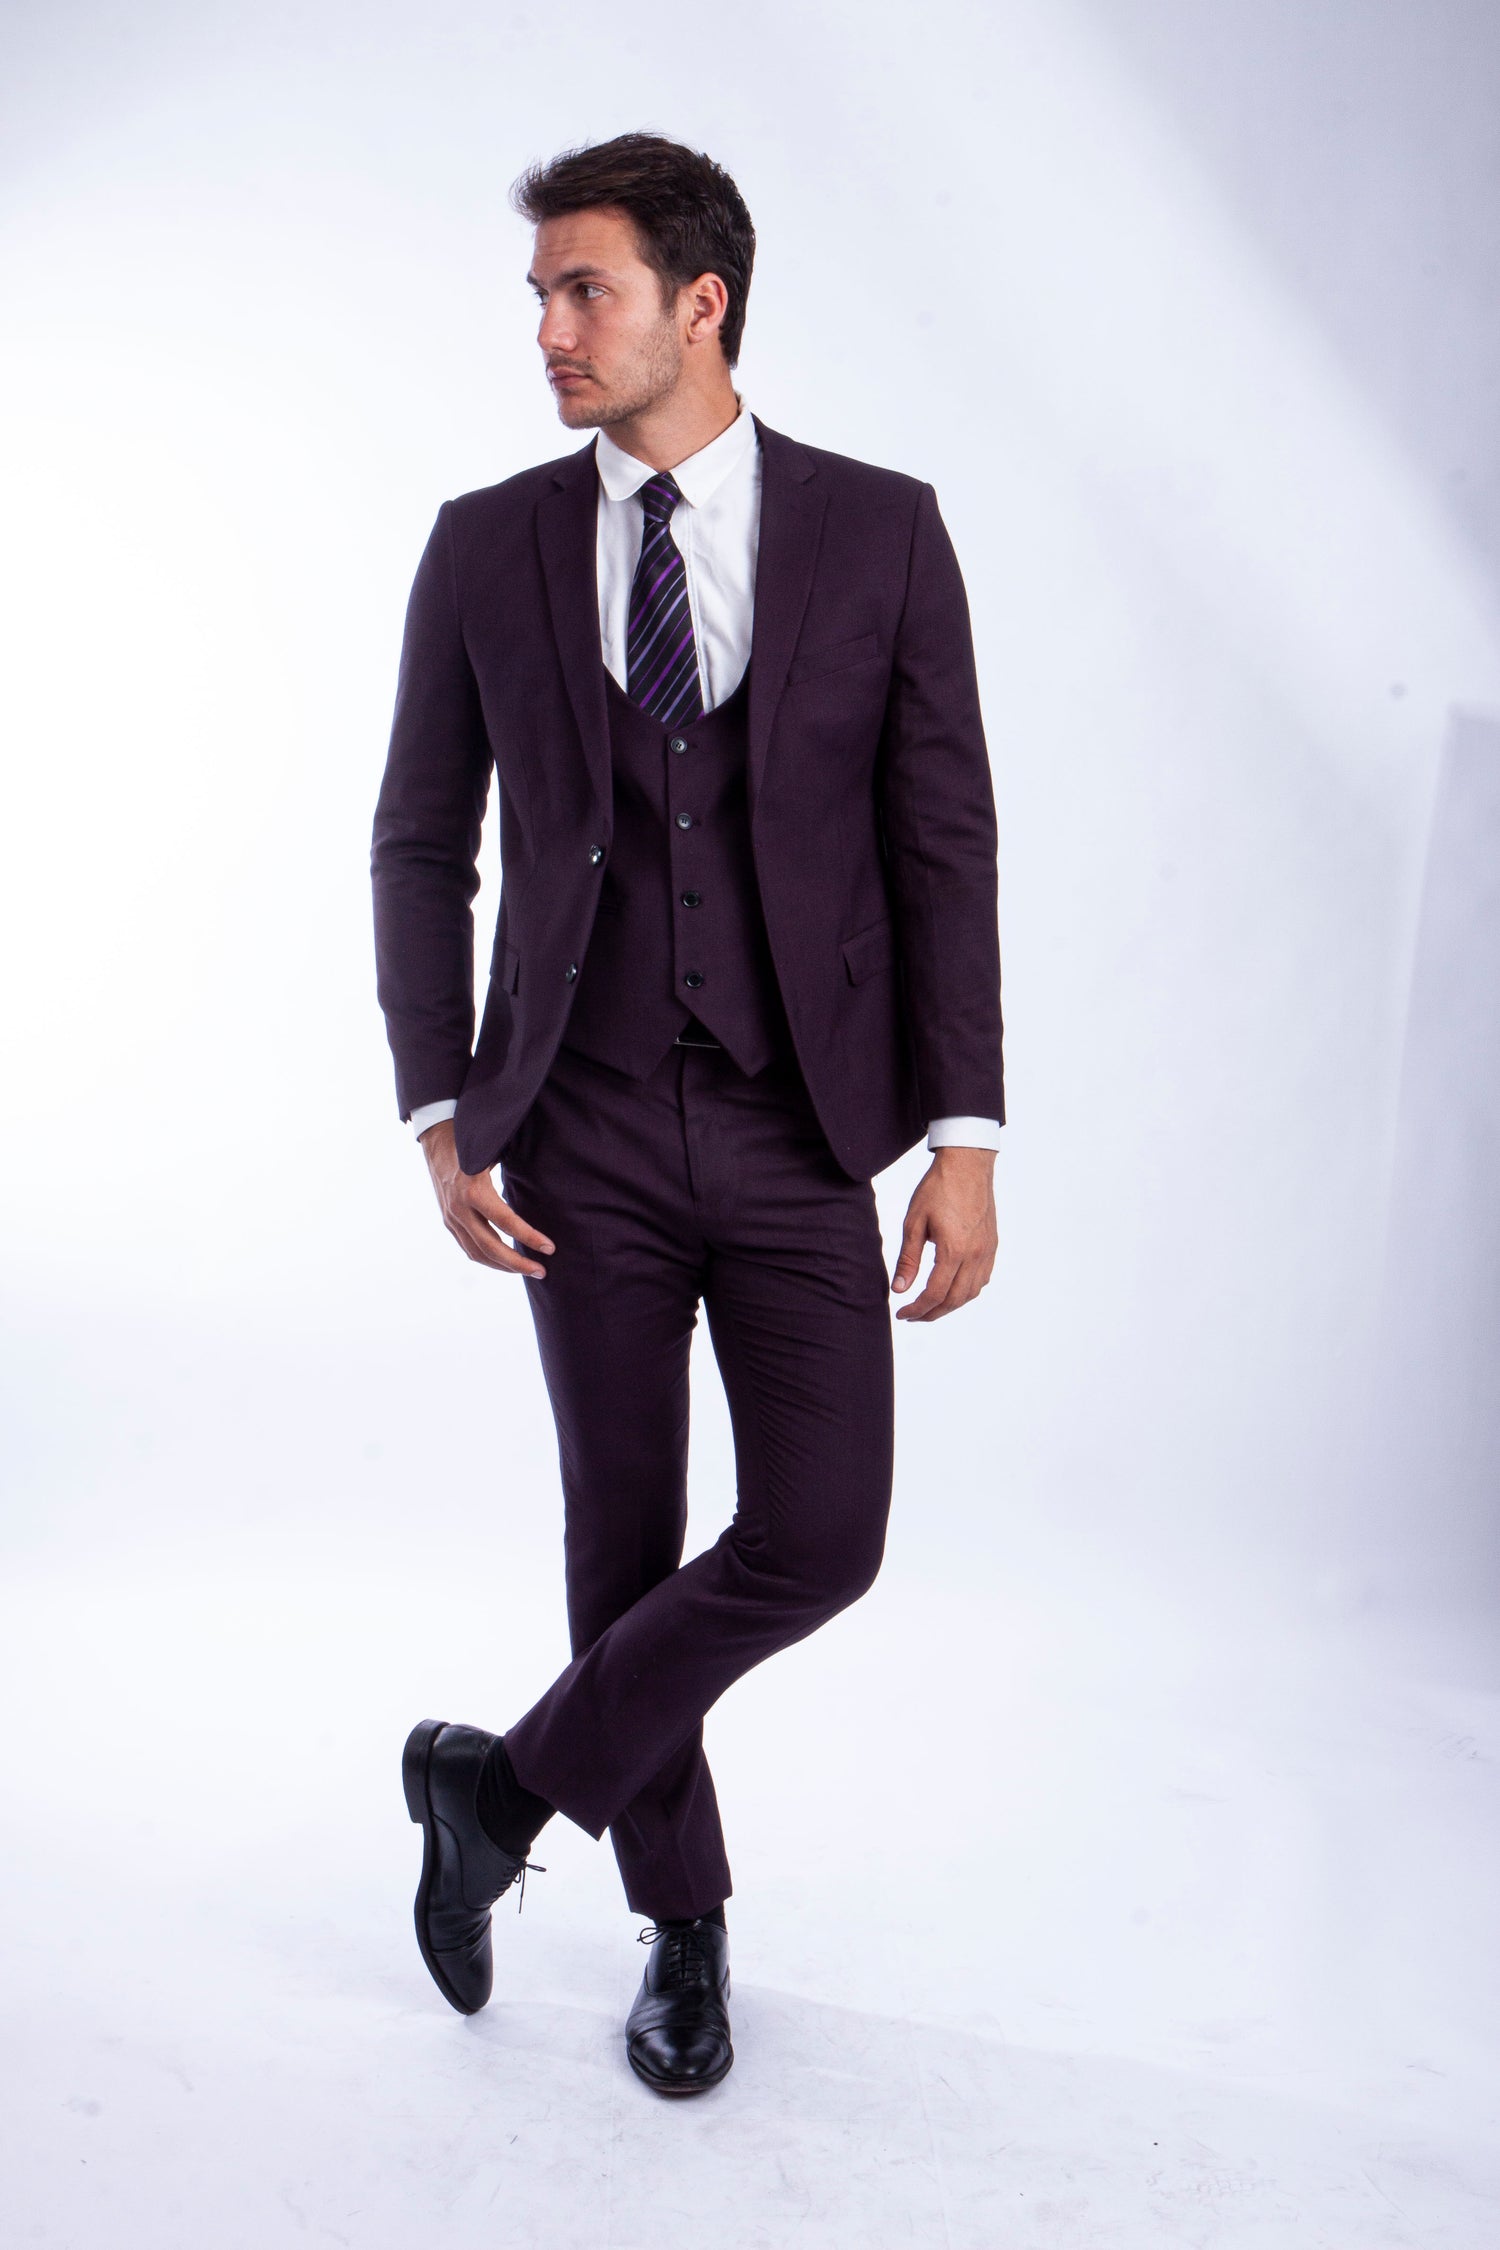 Sean Alexander - Skinny Fit Suits